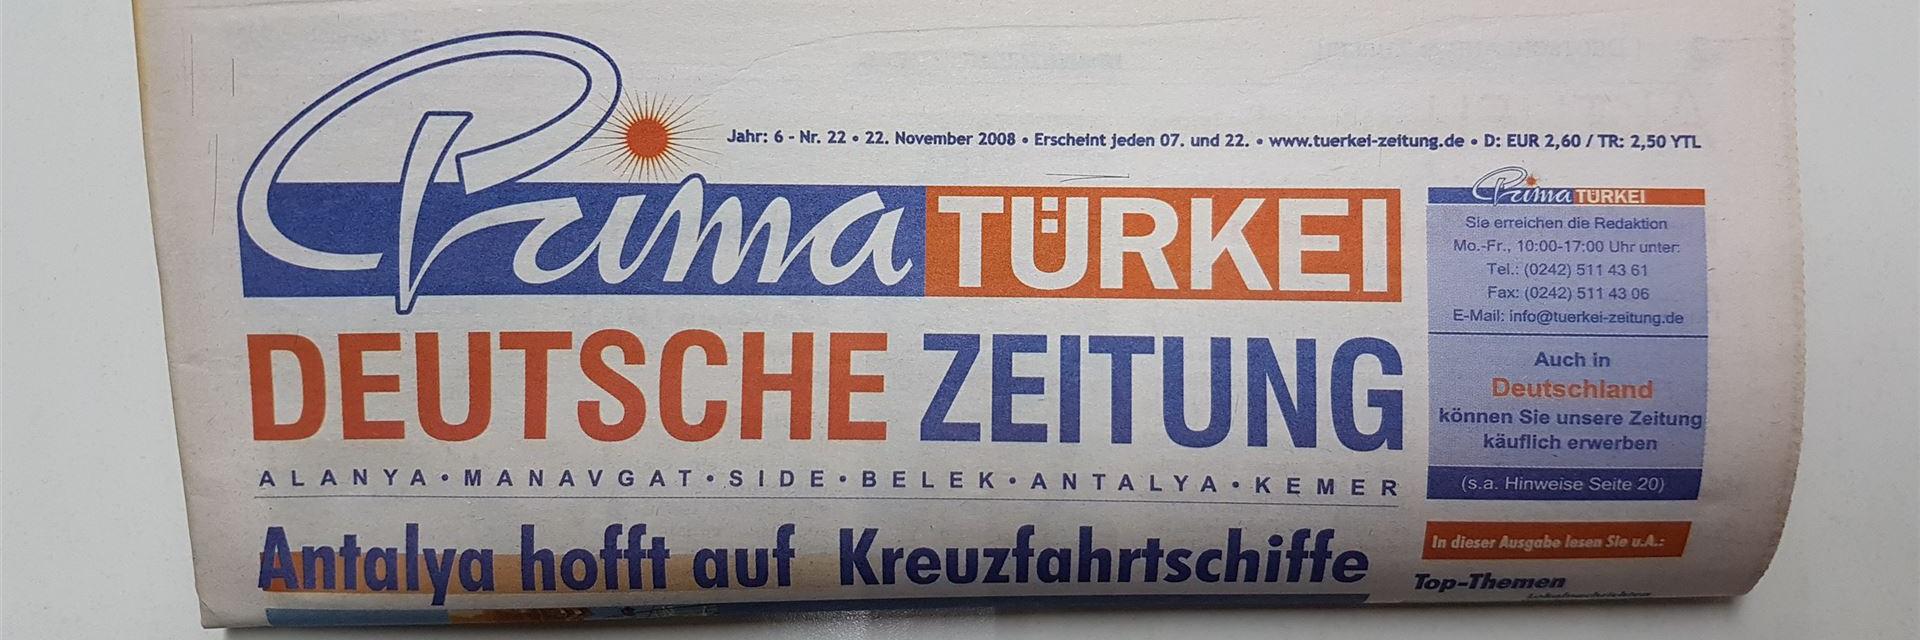 Deutsche Türkei Zeitung